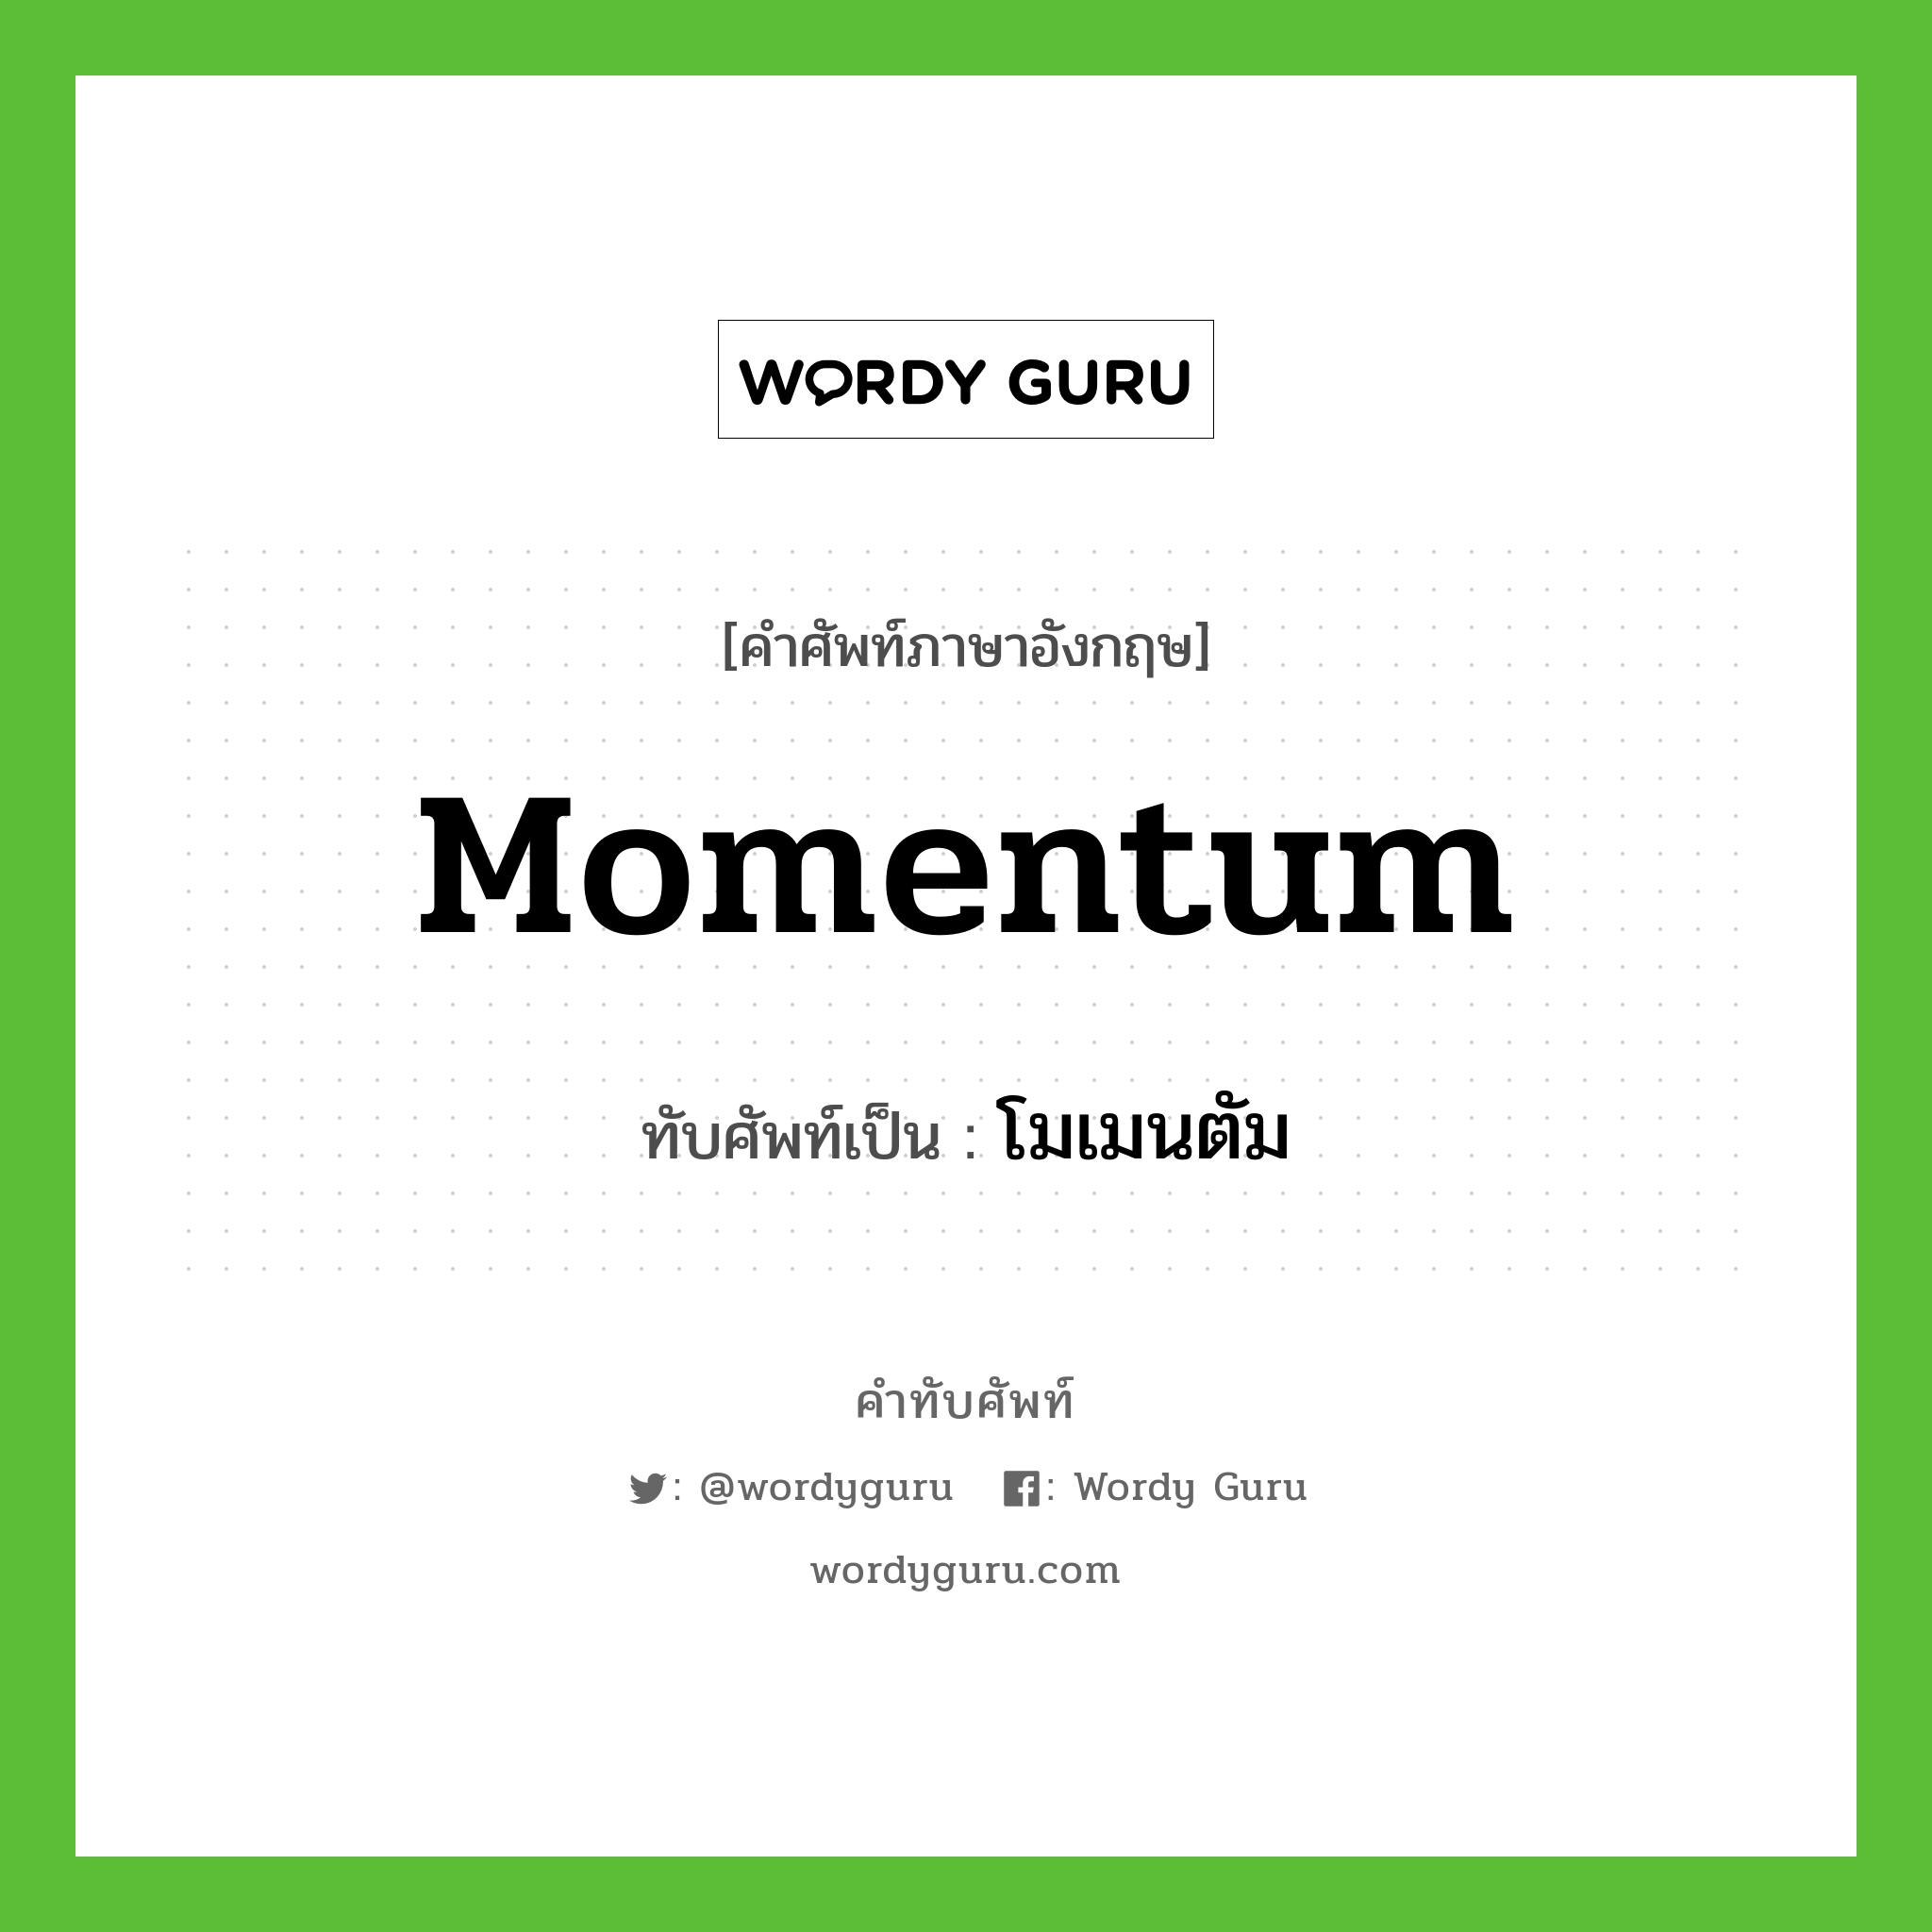 โมเมนตัม เขียนอย่างไร?, คำศัพท์ภาษาอังกฤษ โมเมนตัม ทับศัพท์เป็น momentum